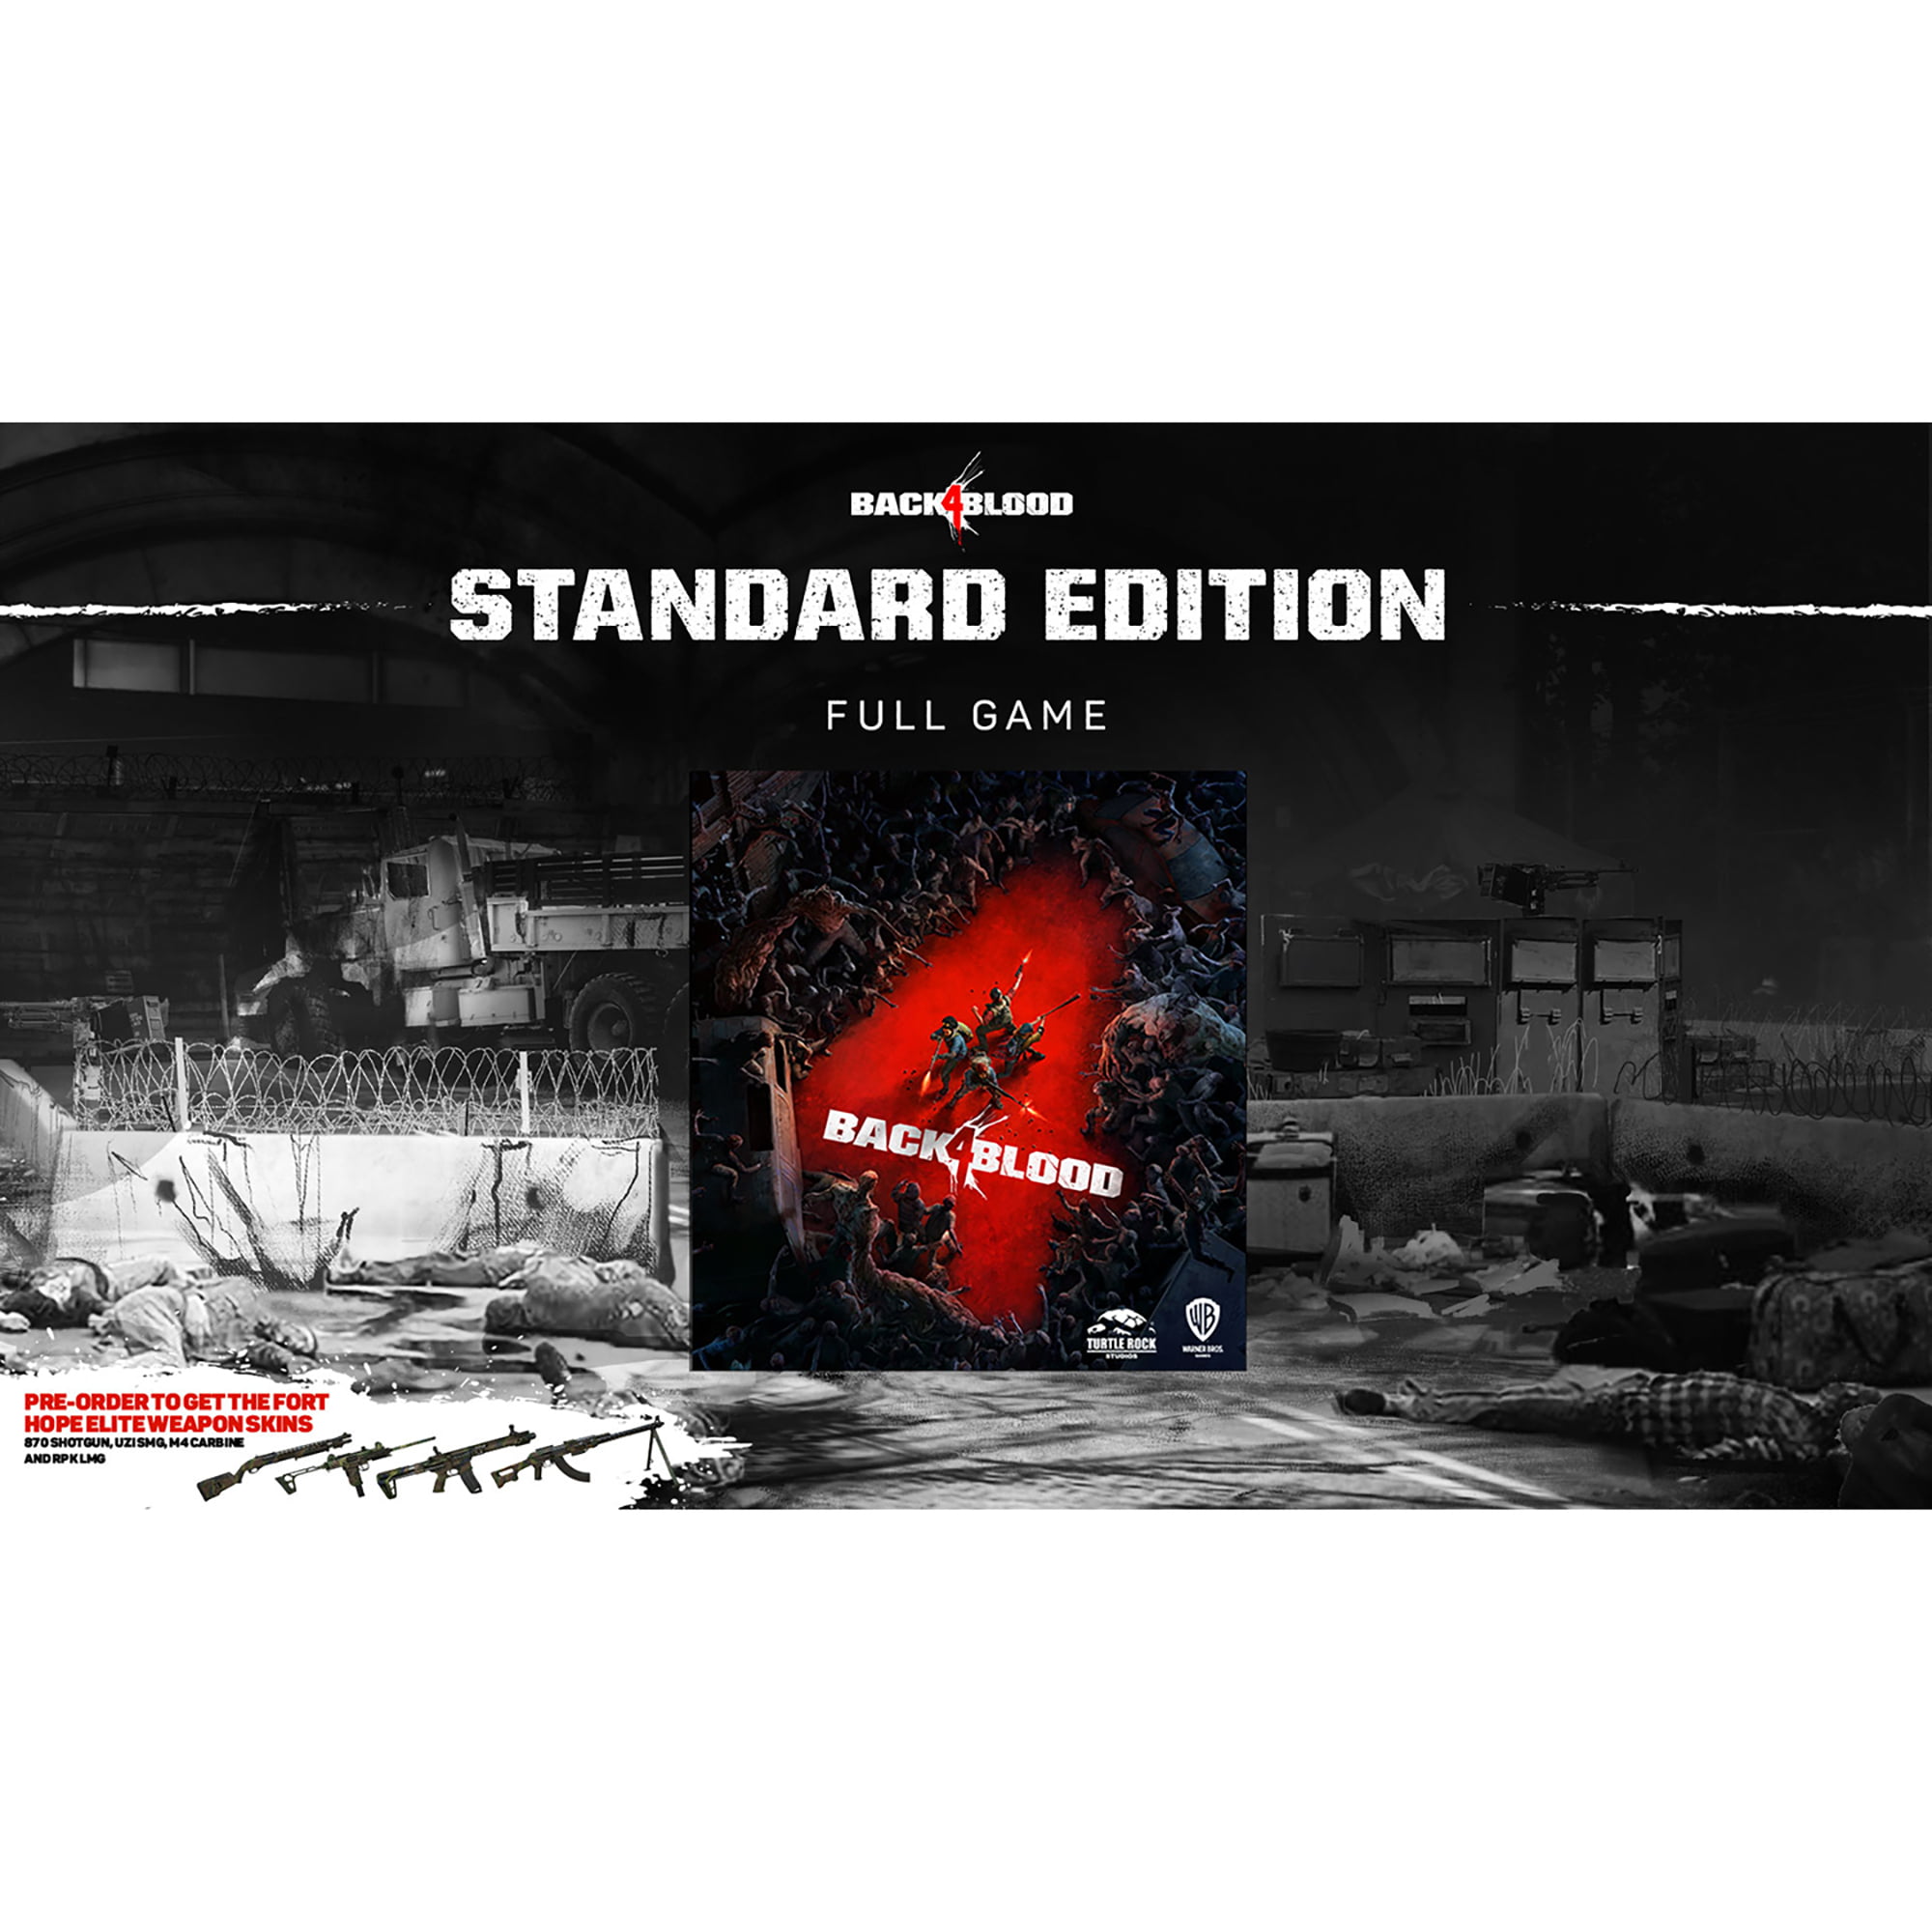 Compra Back 4 Blood: Deluxe Edition en la tienda Humble